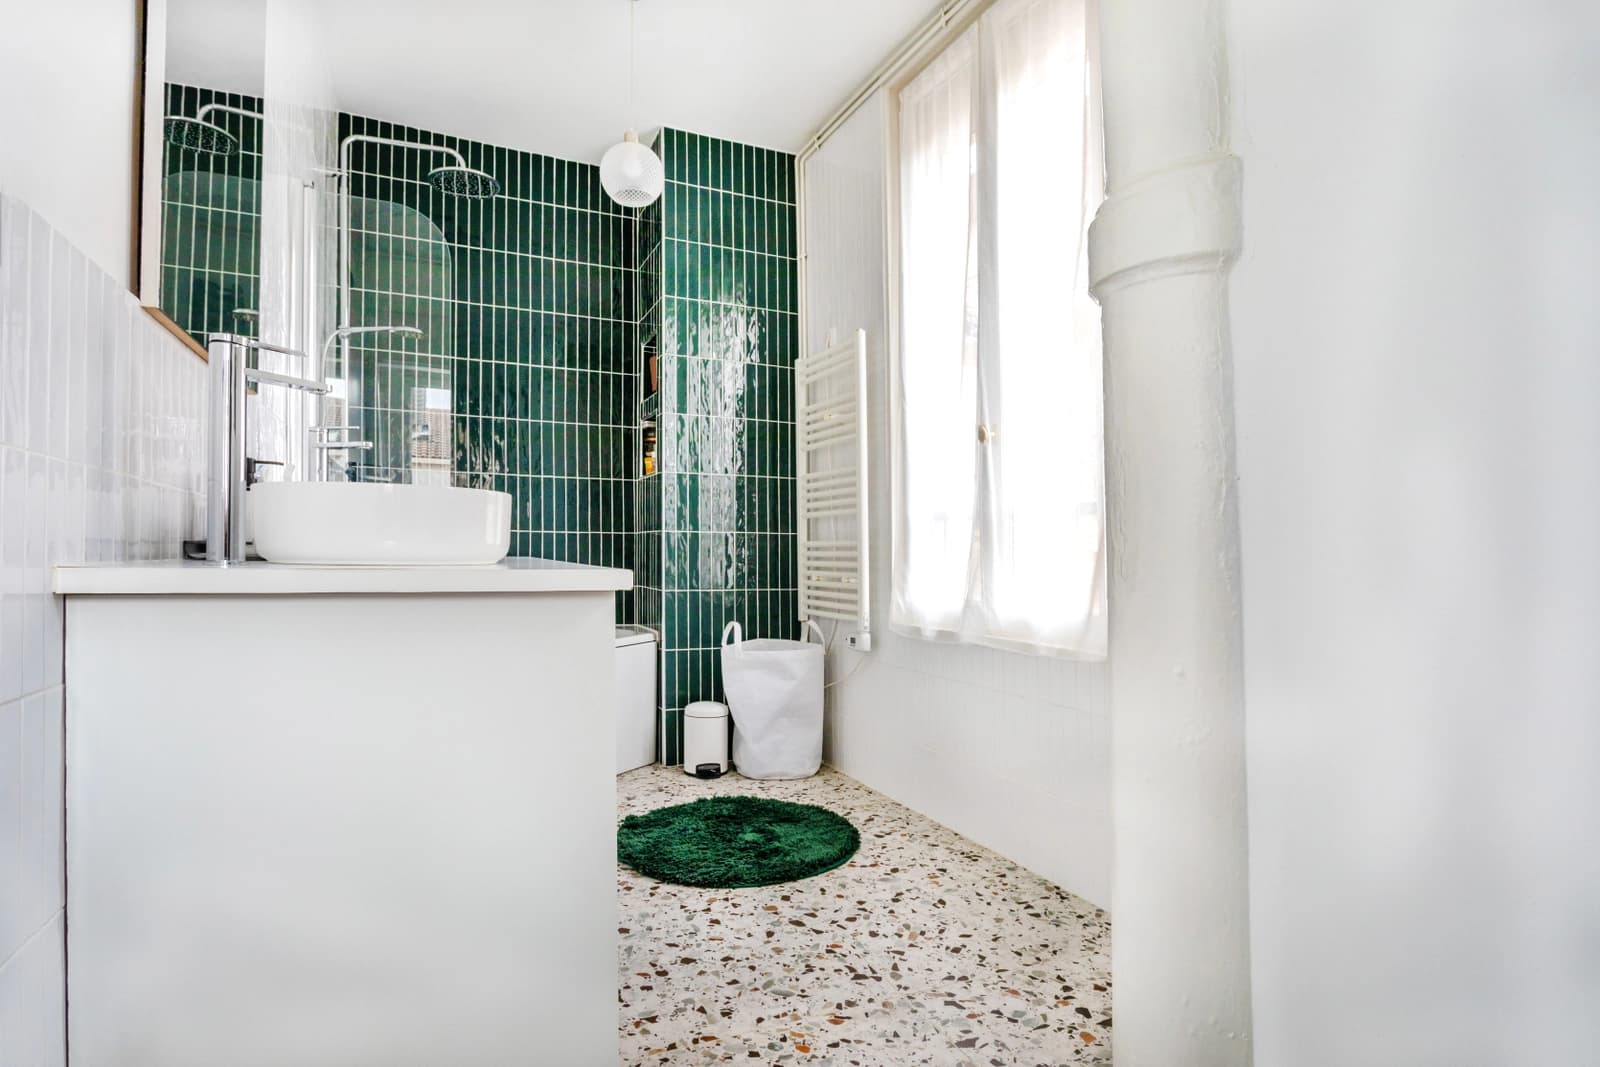 Cuarto de baño dentro Apartamento de estilo haussmaniano a orillas del Marne - 1